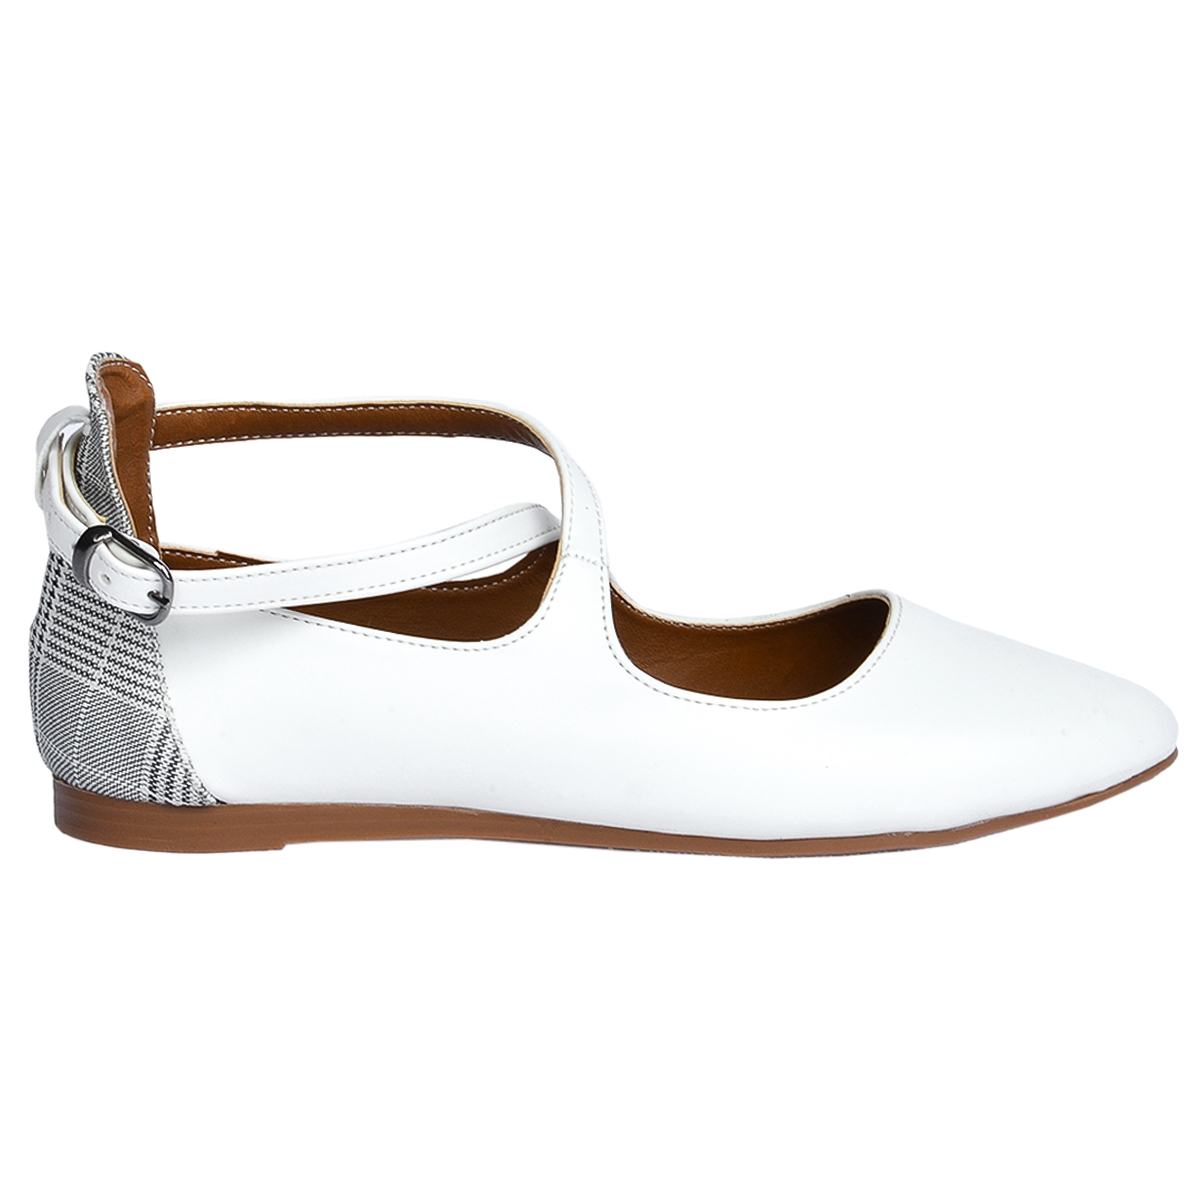 Flo 1920-203 Cilt Sandalet Kadın Babet Ayakkabı BEYAZ. 1